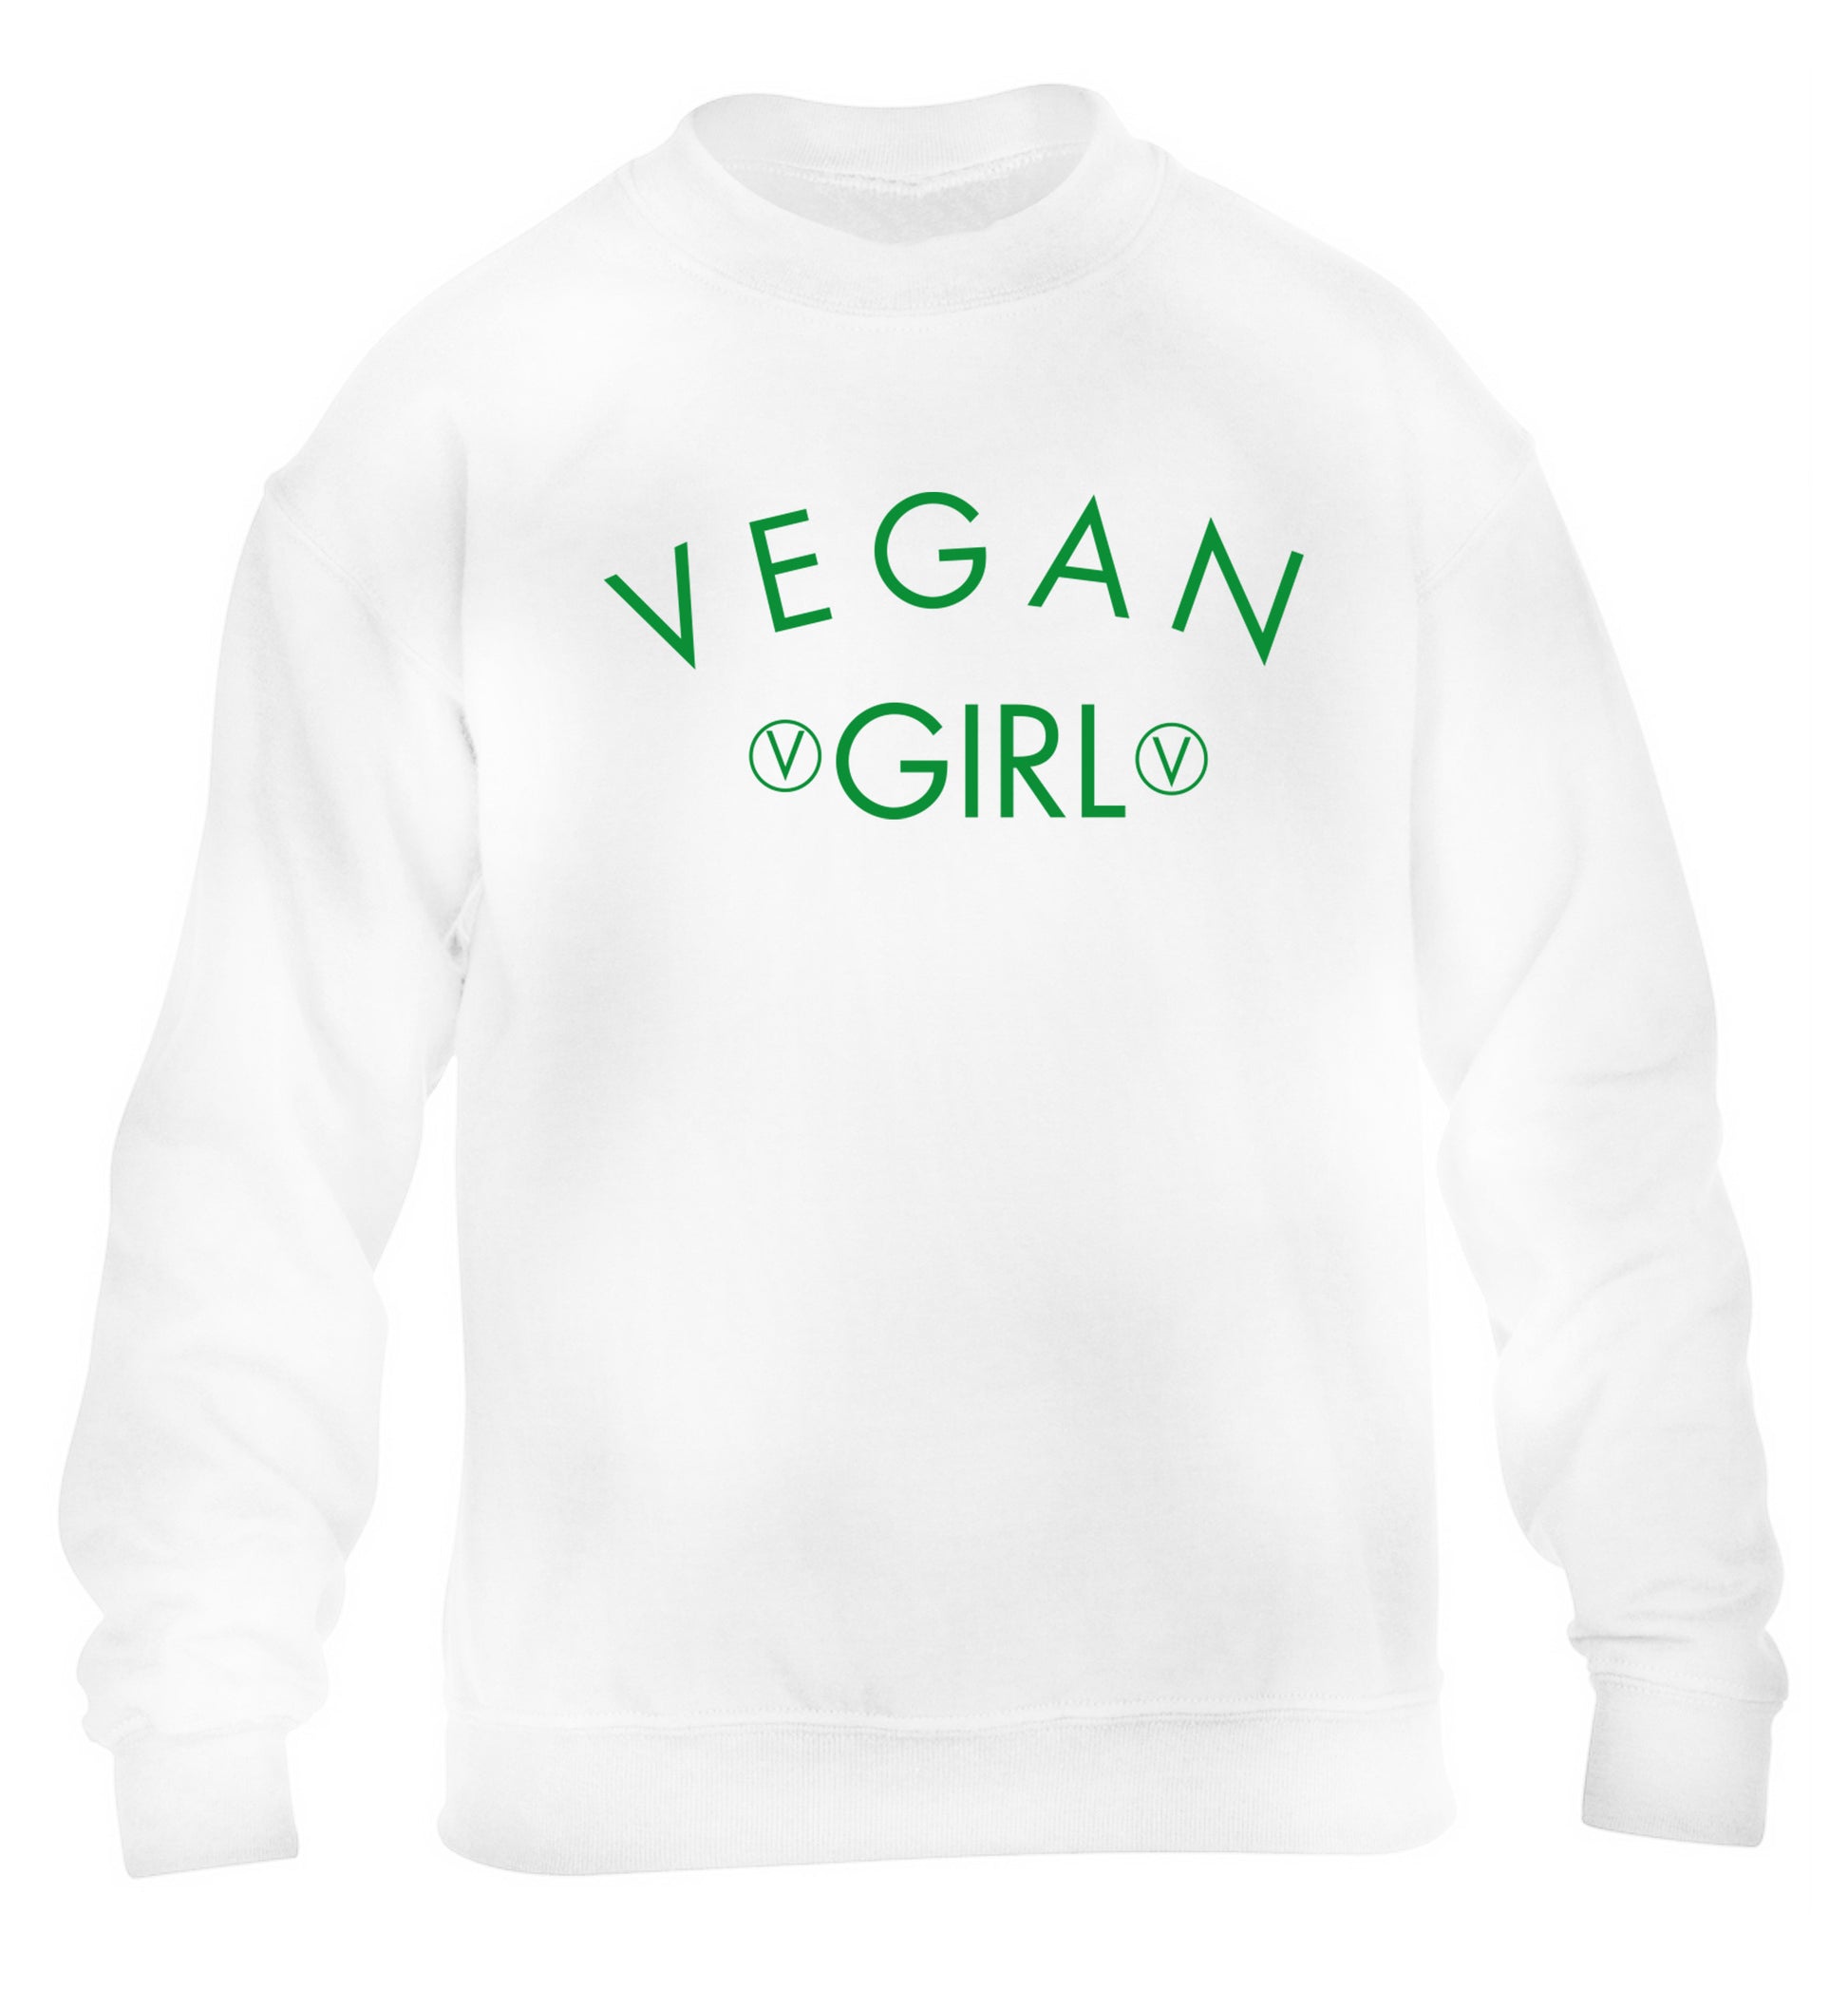 Vegan girl children's white sweater 12-14 Years